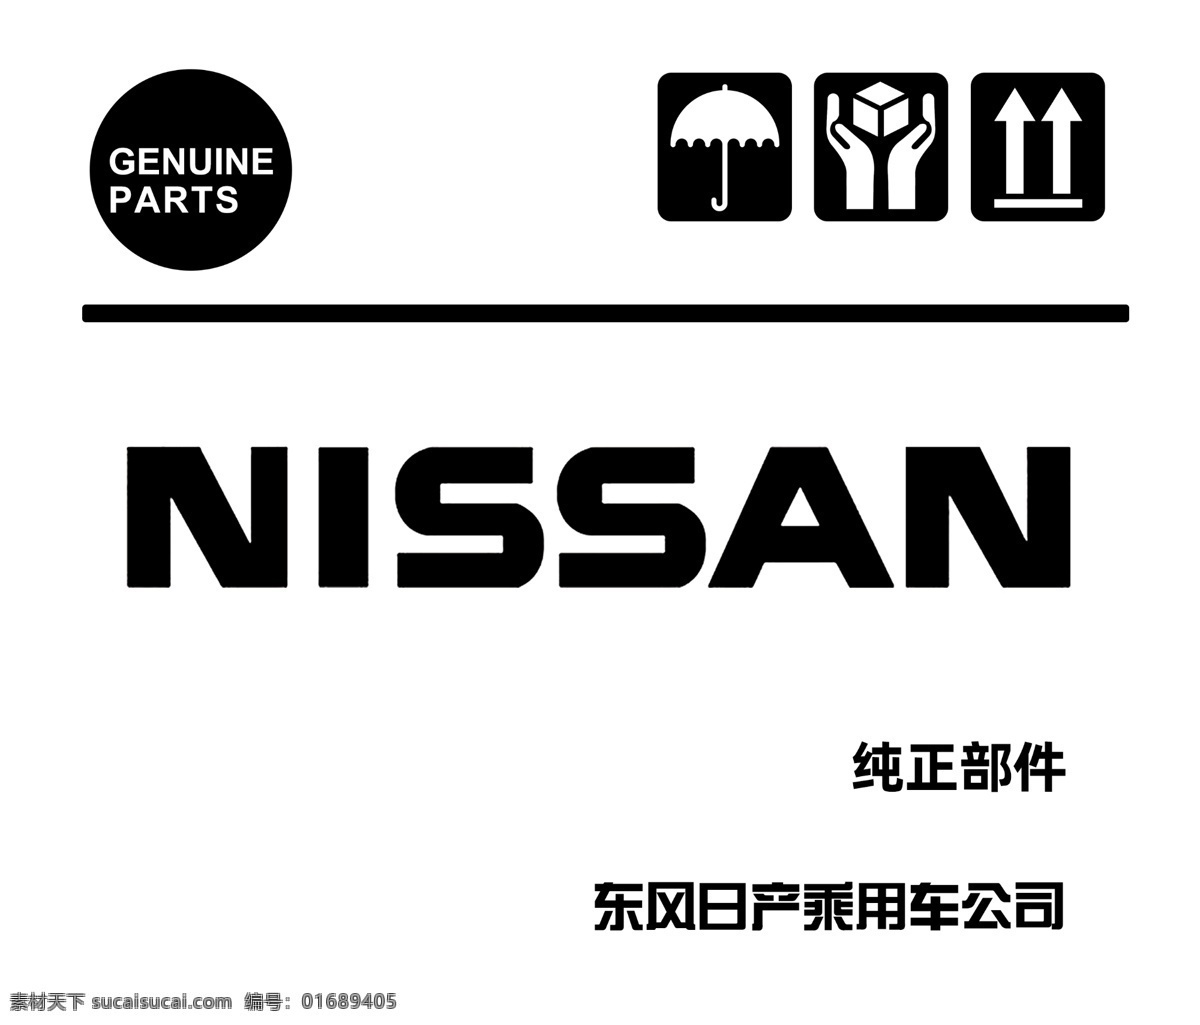 尼桑 汽车 logo 标志 nissan 尼桑标志 尼桑logo 汽车标志 汽车logo 企业logo 分层